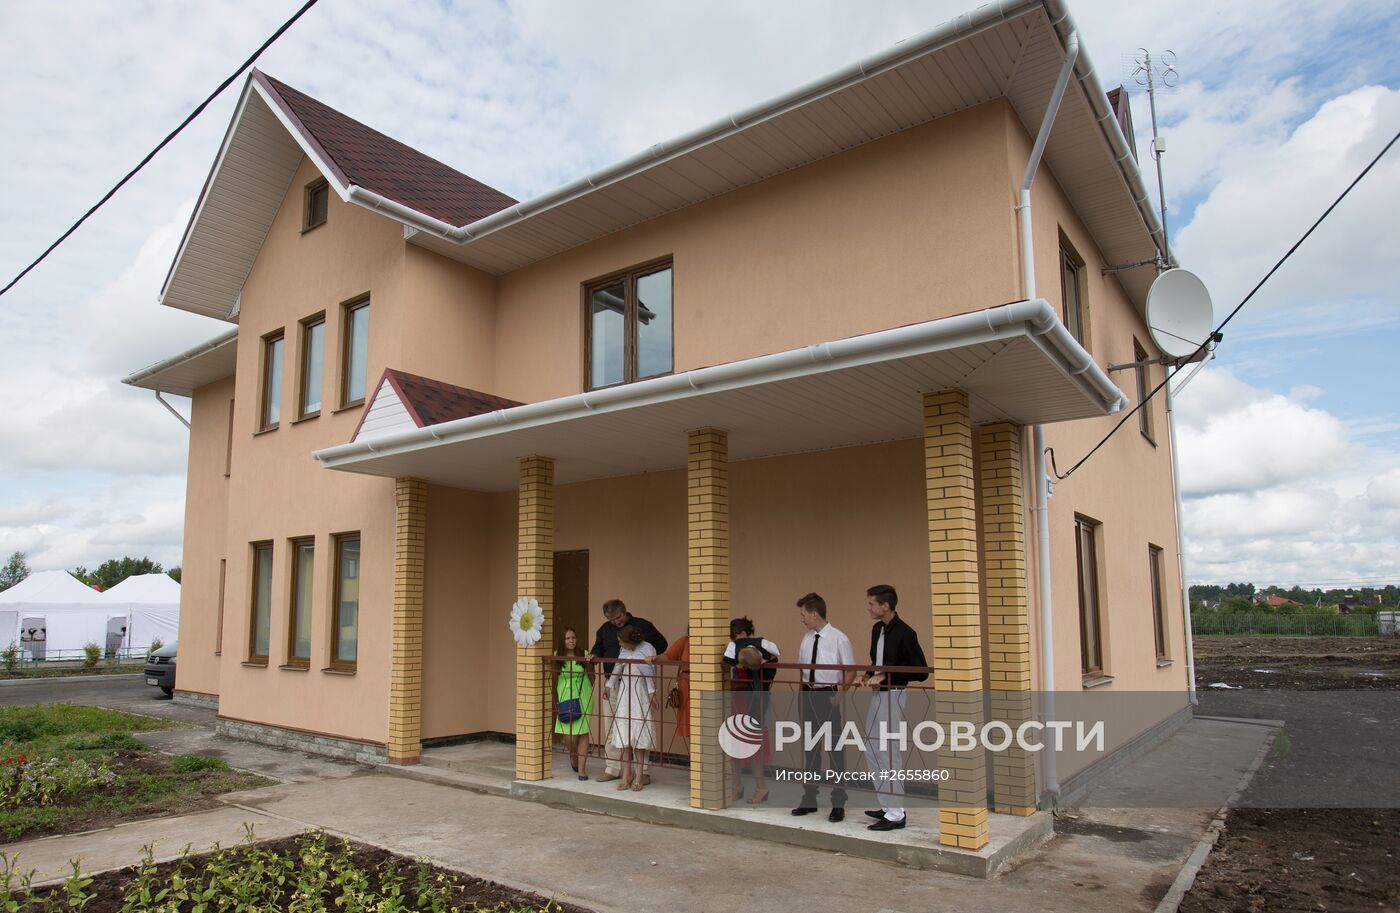 Открытие детского семейного приюта трудолюбия в Санкт-Петербурге